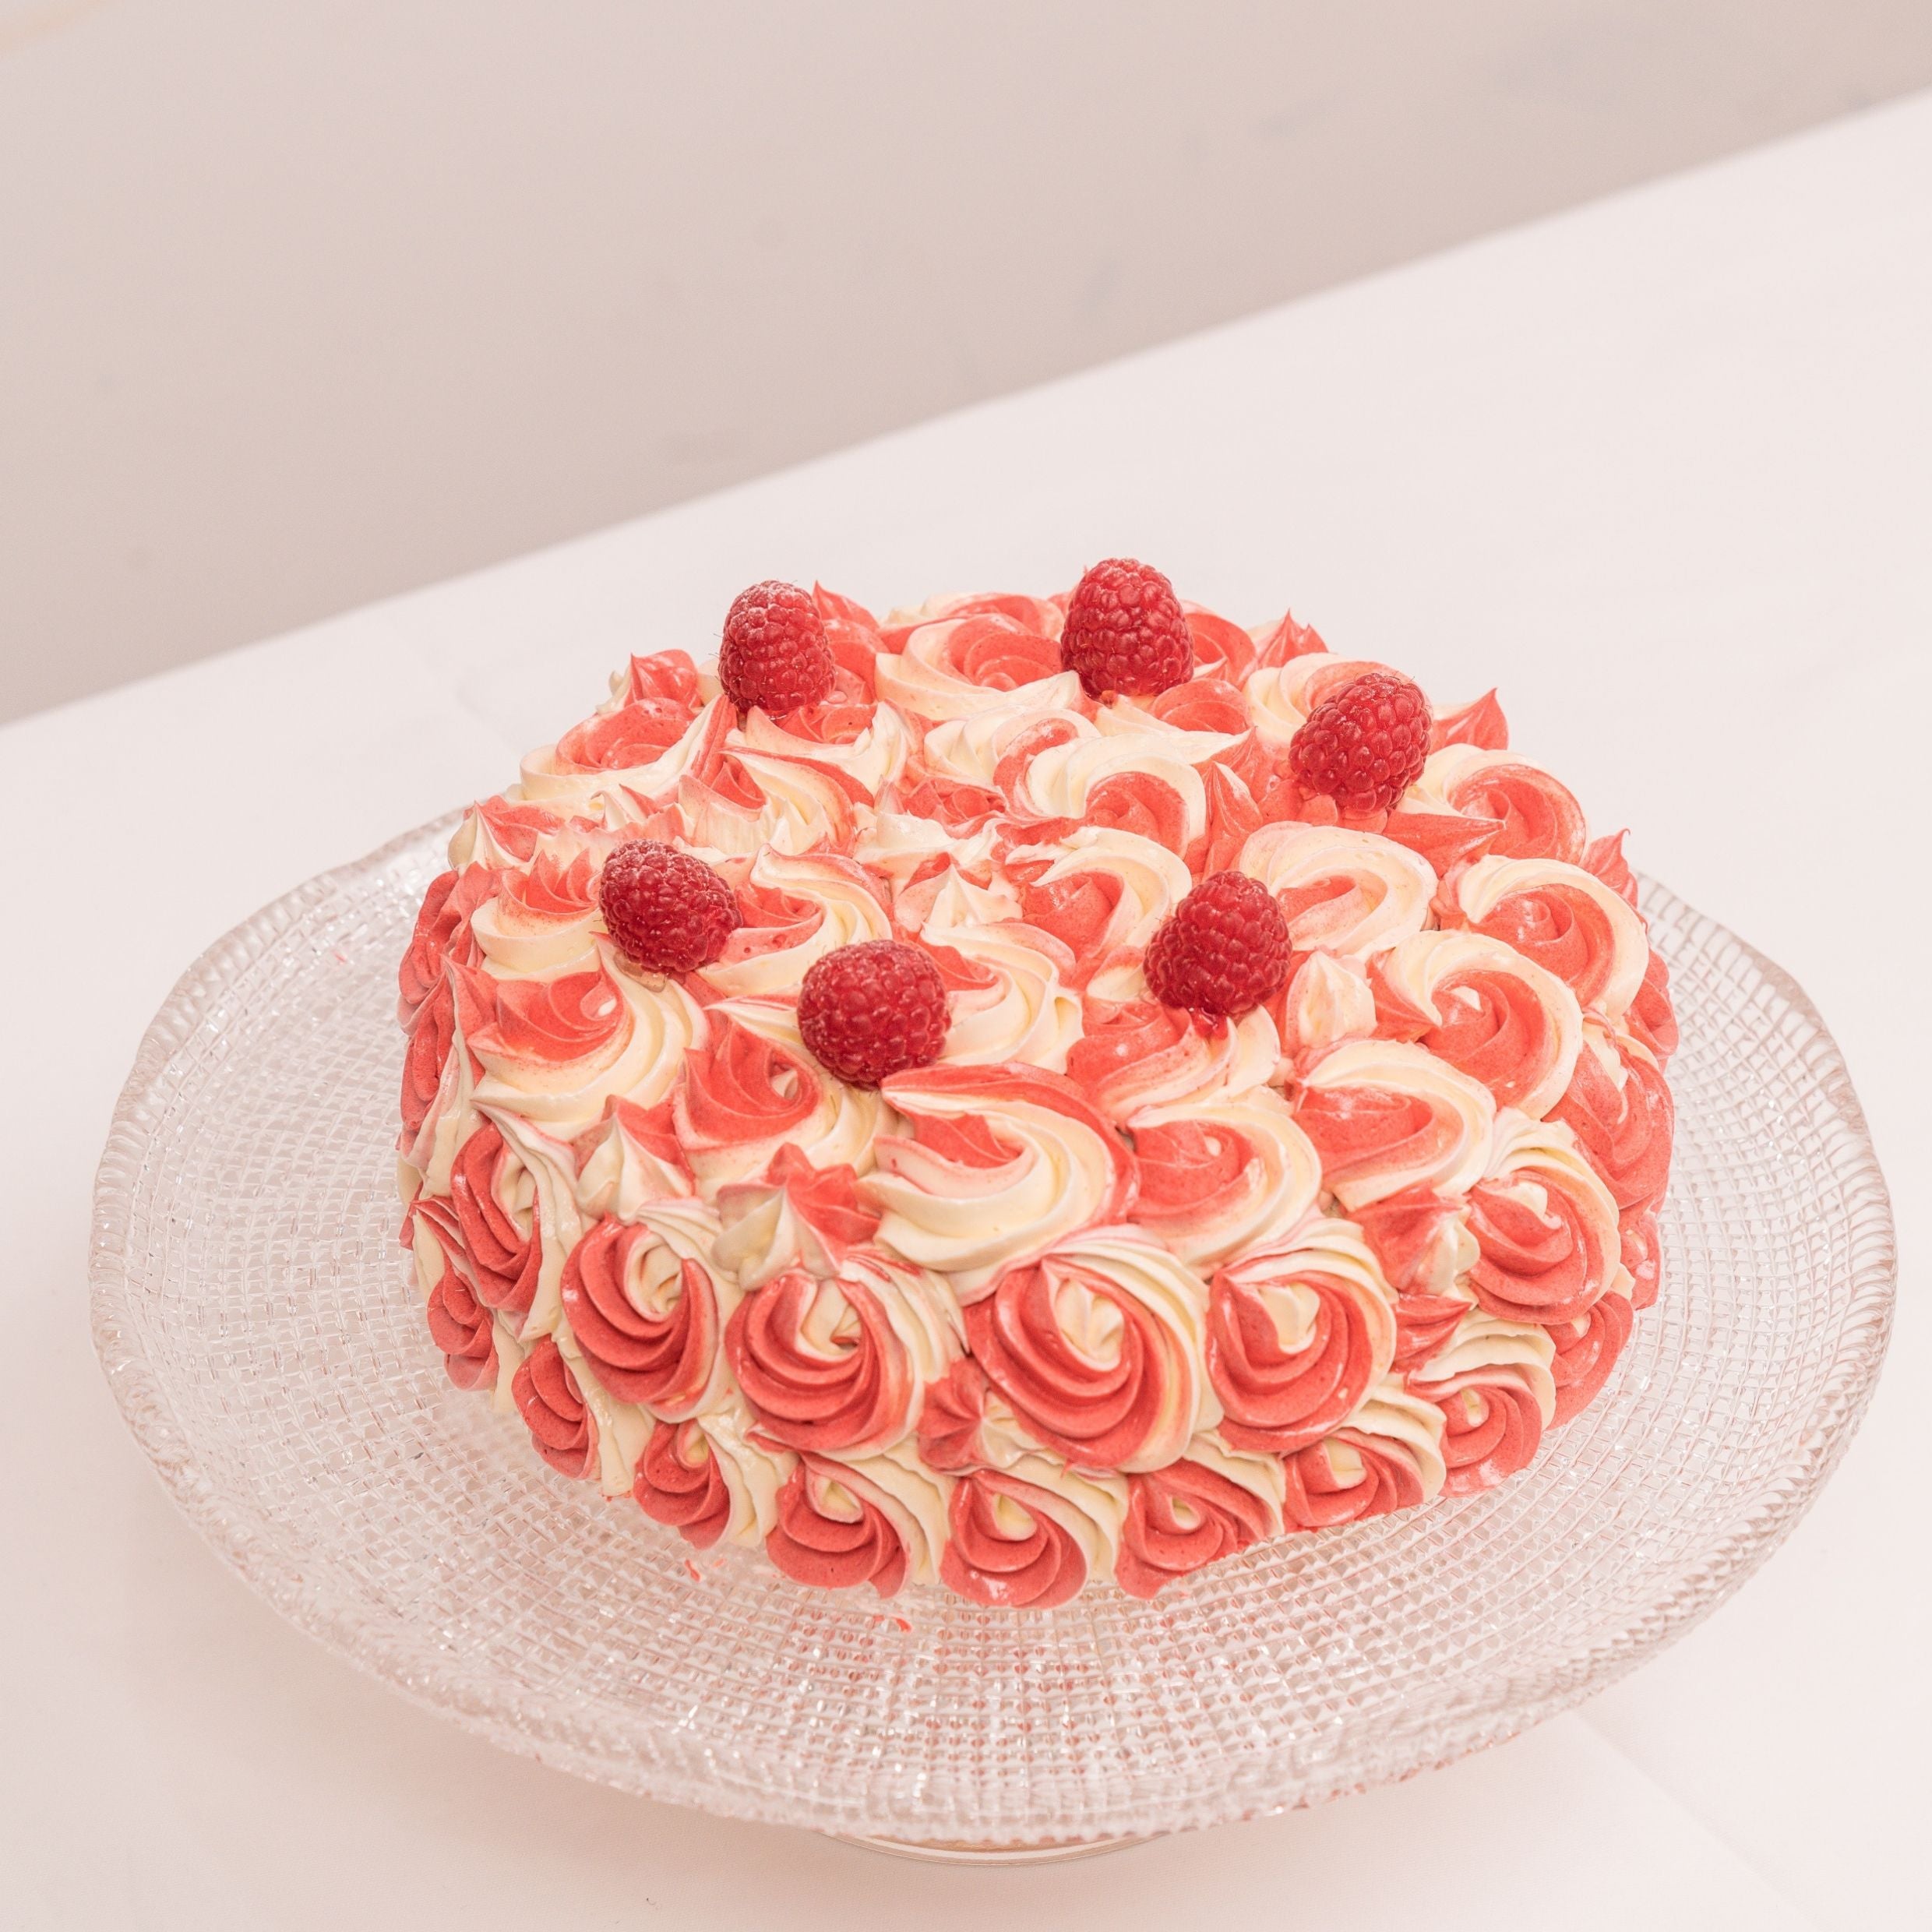 Lychee Rose Cake - YouTube